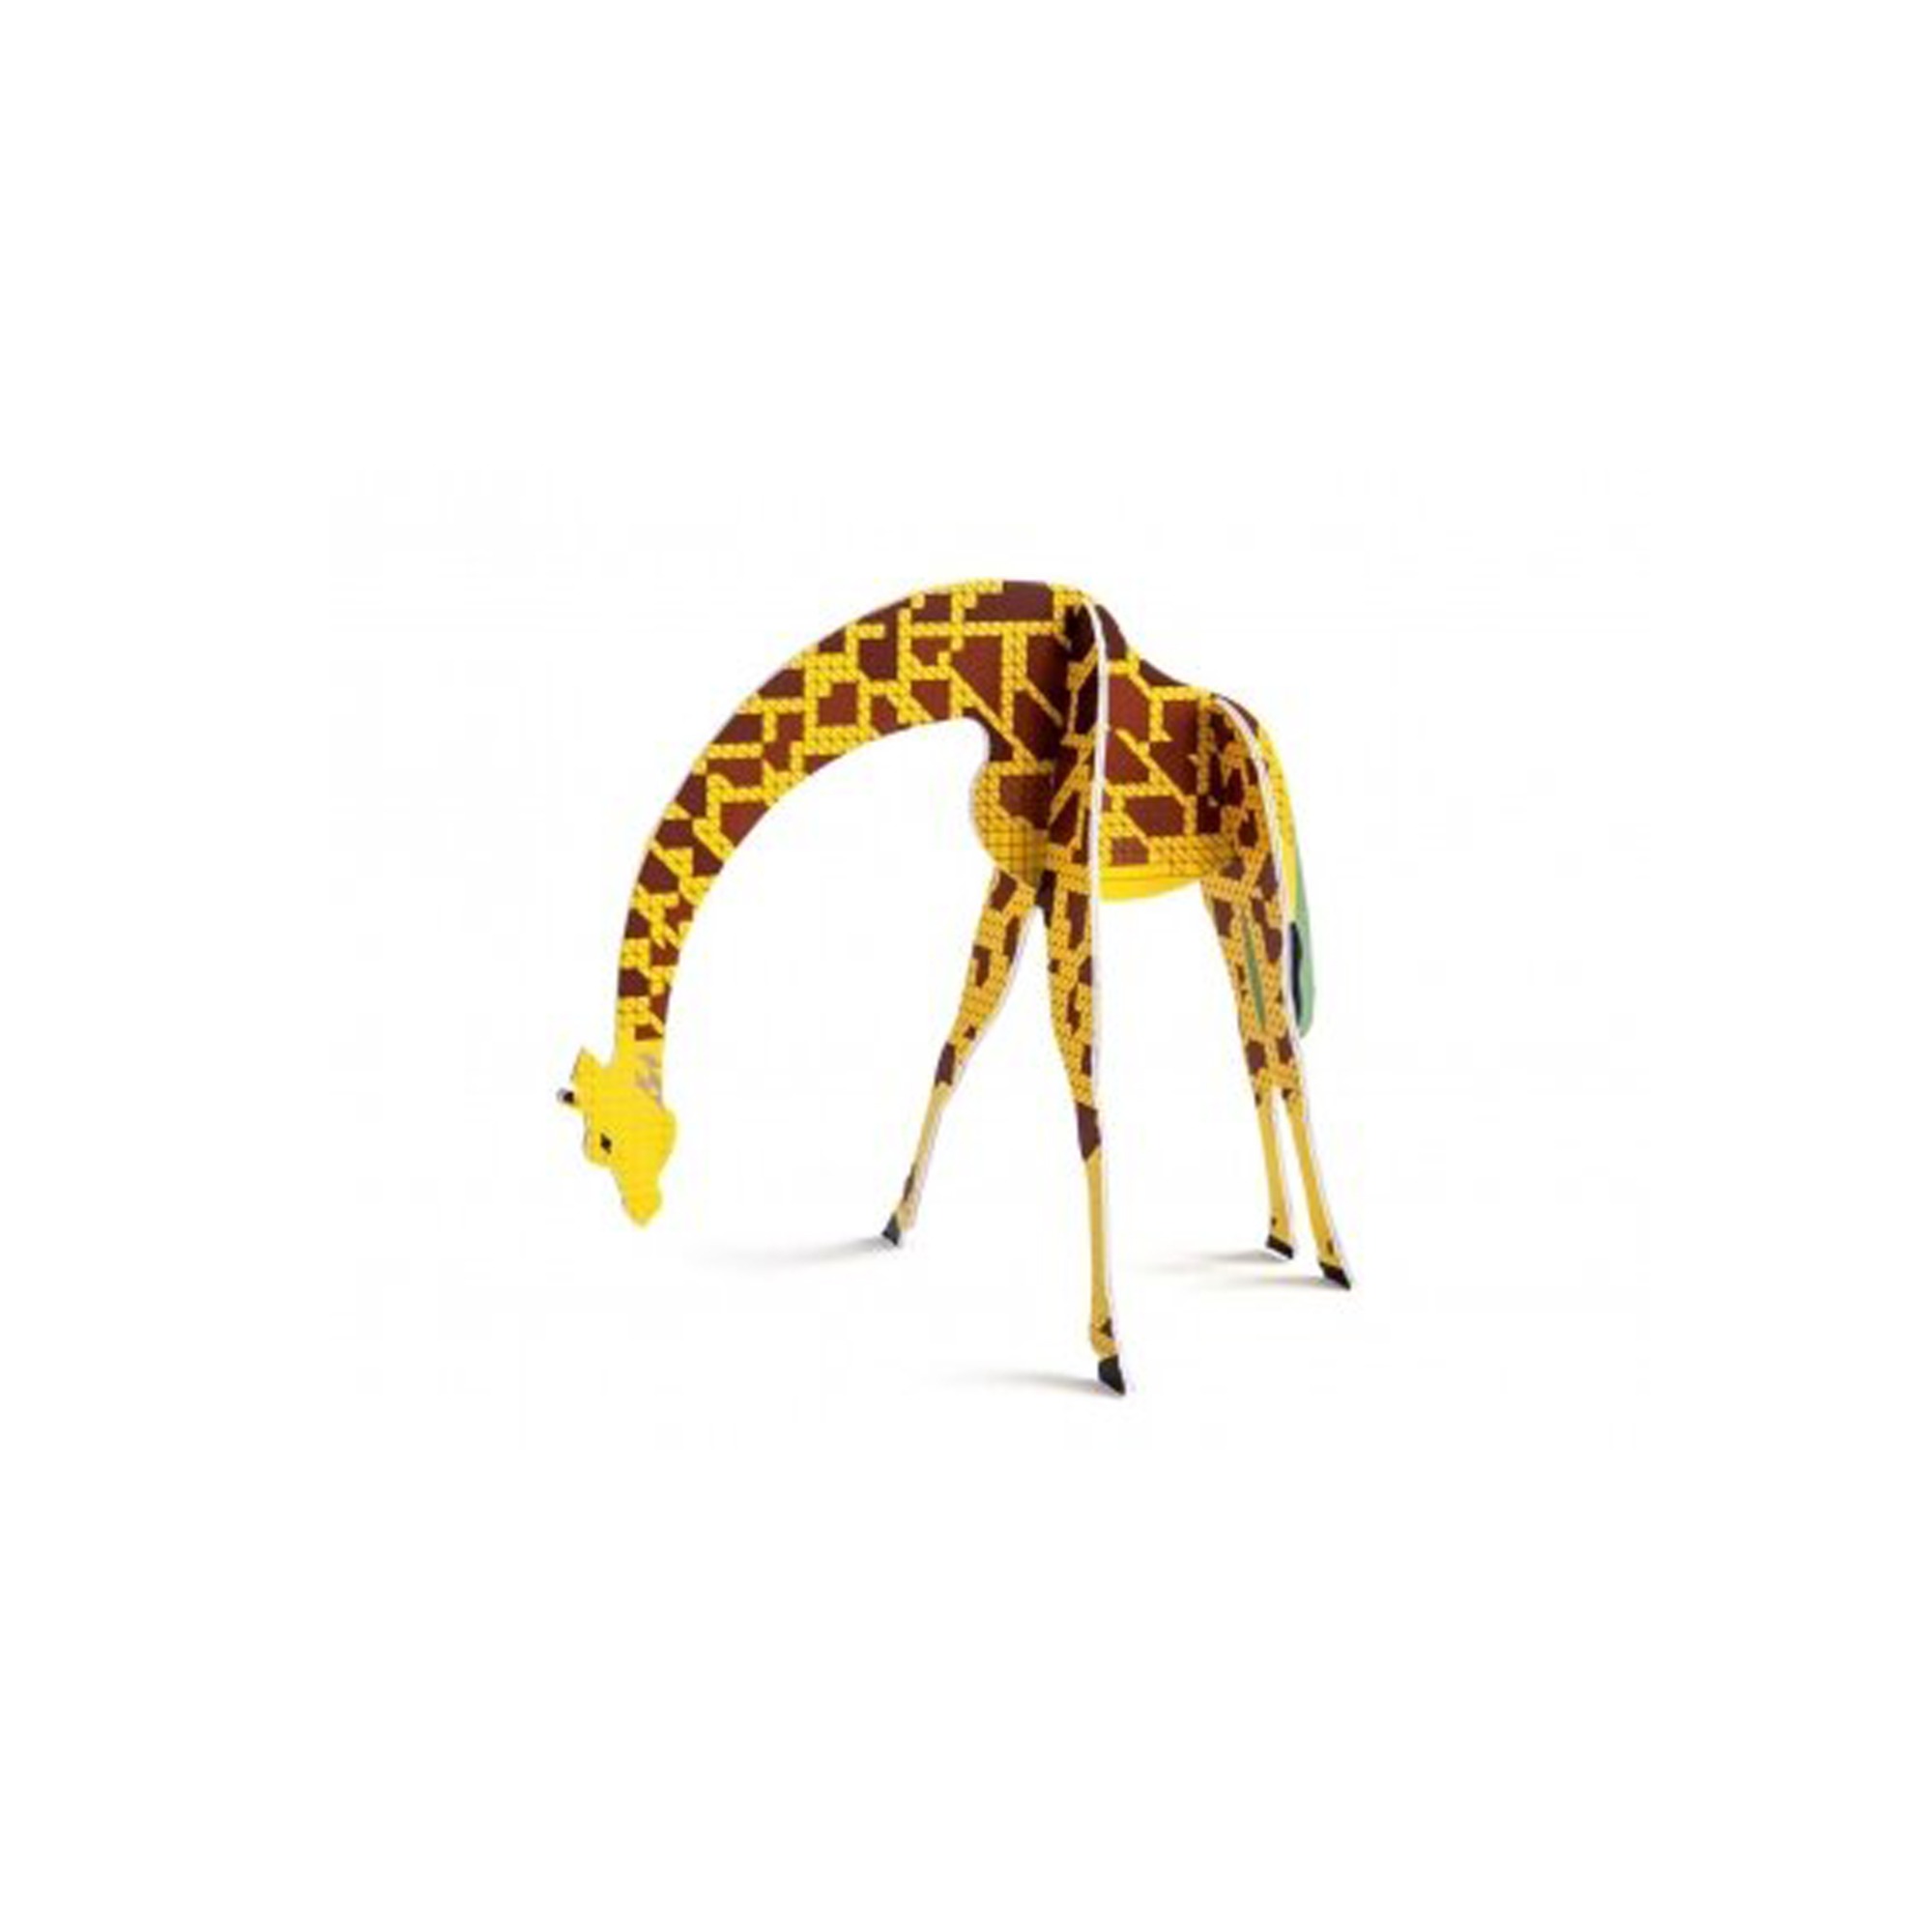 Studio Roof Pop-Out Card - Giraffe